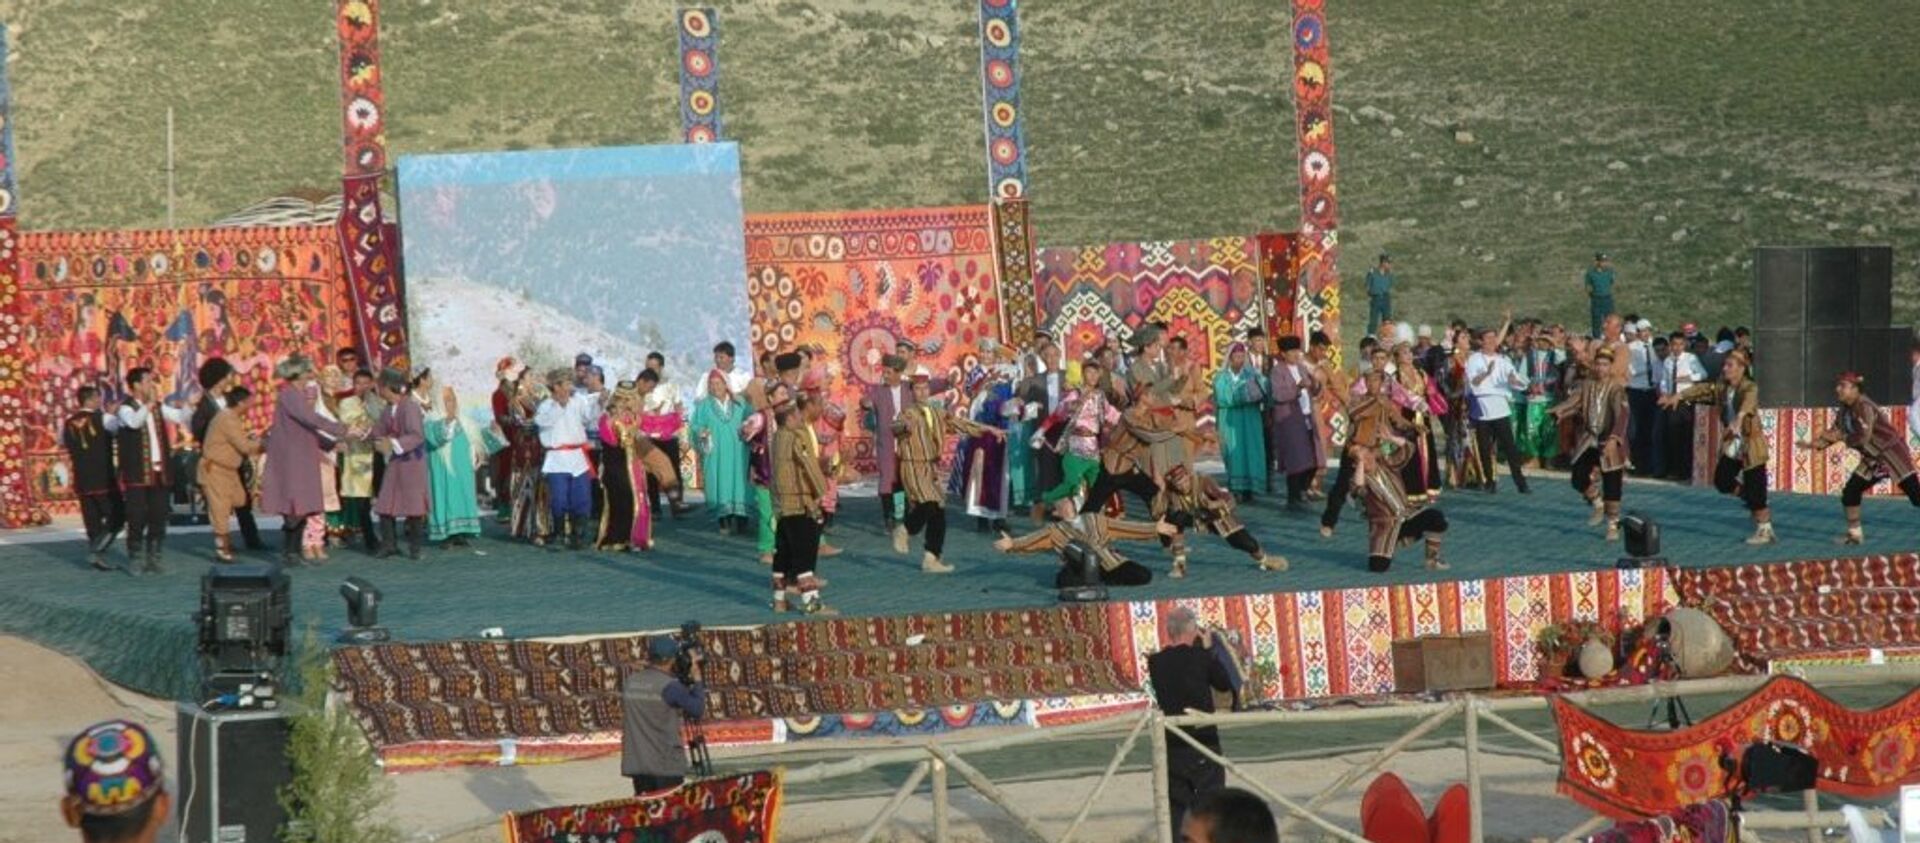 Фестиваль, архивное фото - Sputnik Узбекистан, 1920, 06.05.2018